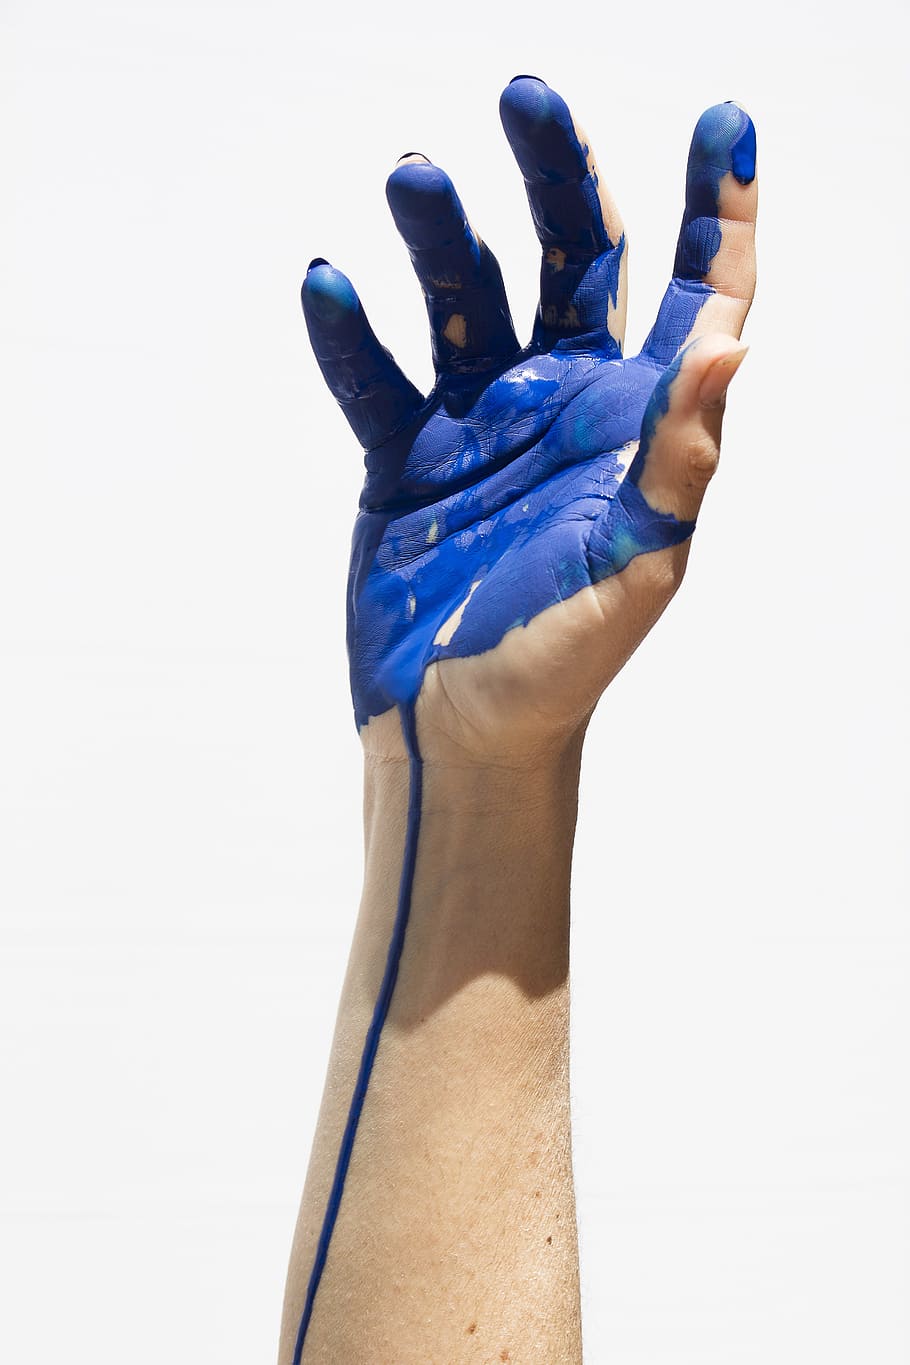 certo, humano, mão, pintar, mão humana, cor, azul, pintura, mãos, parte do corpo humano